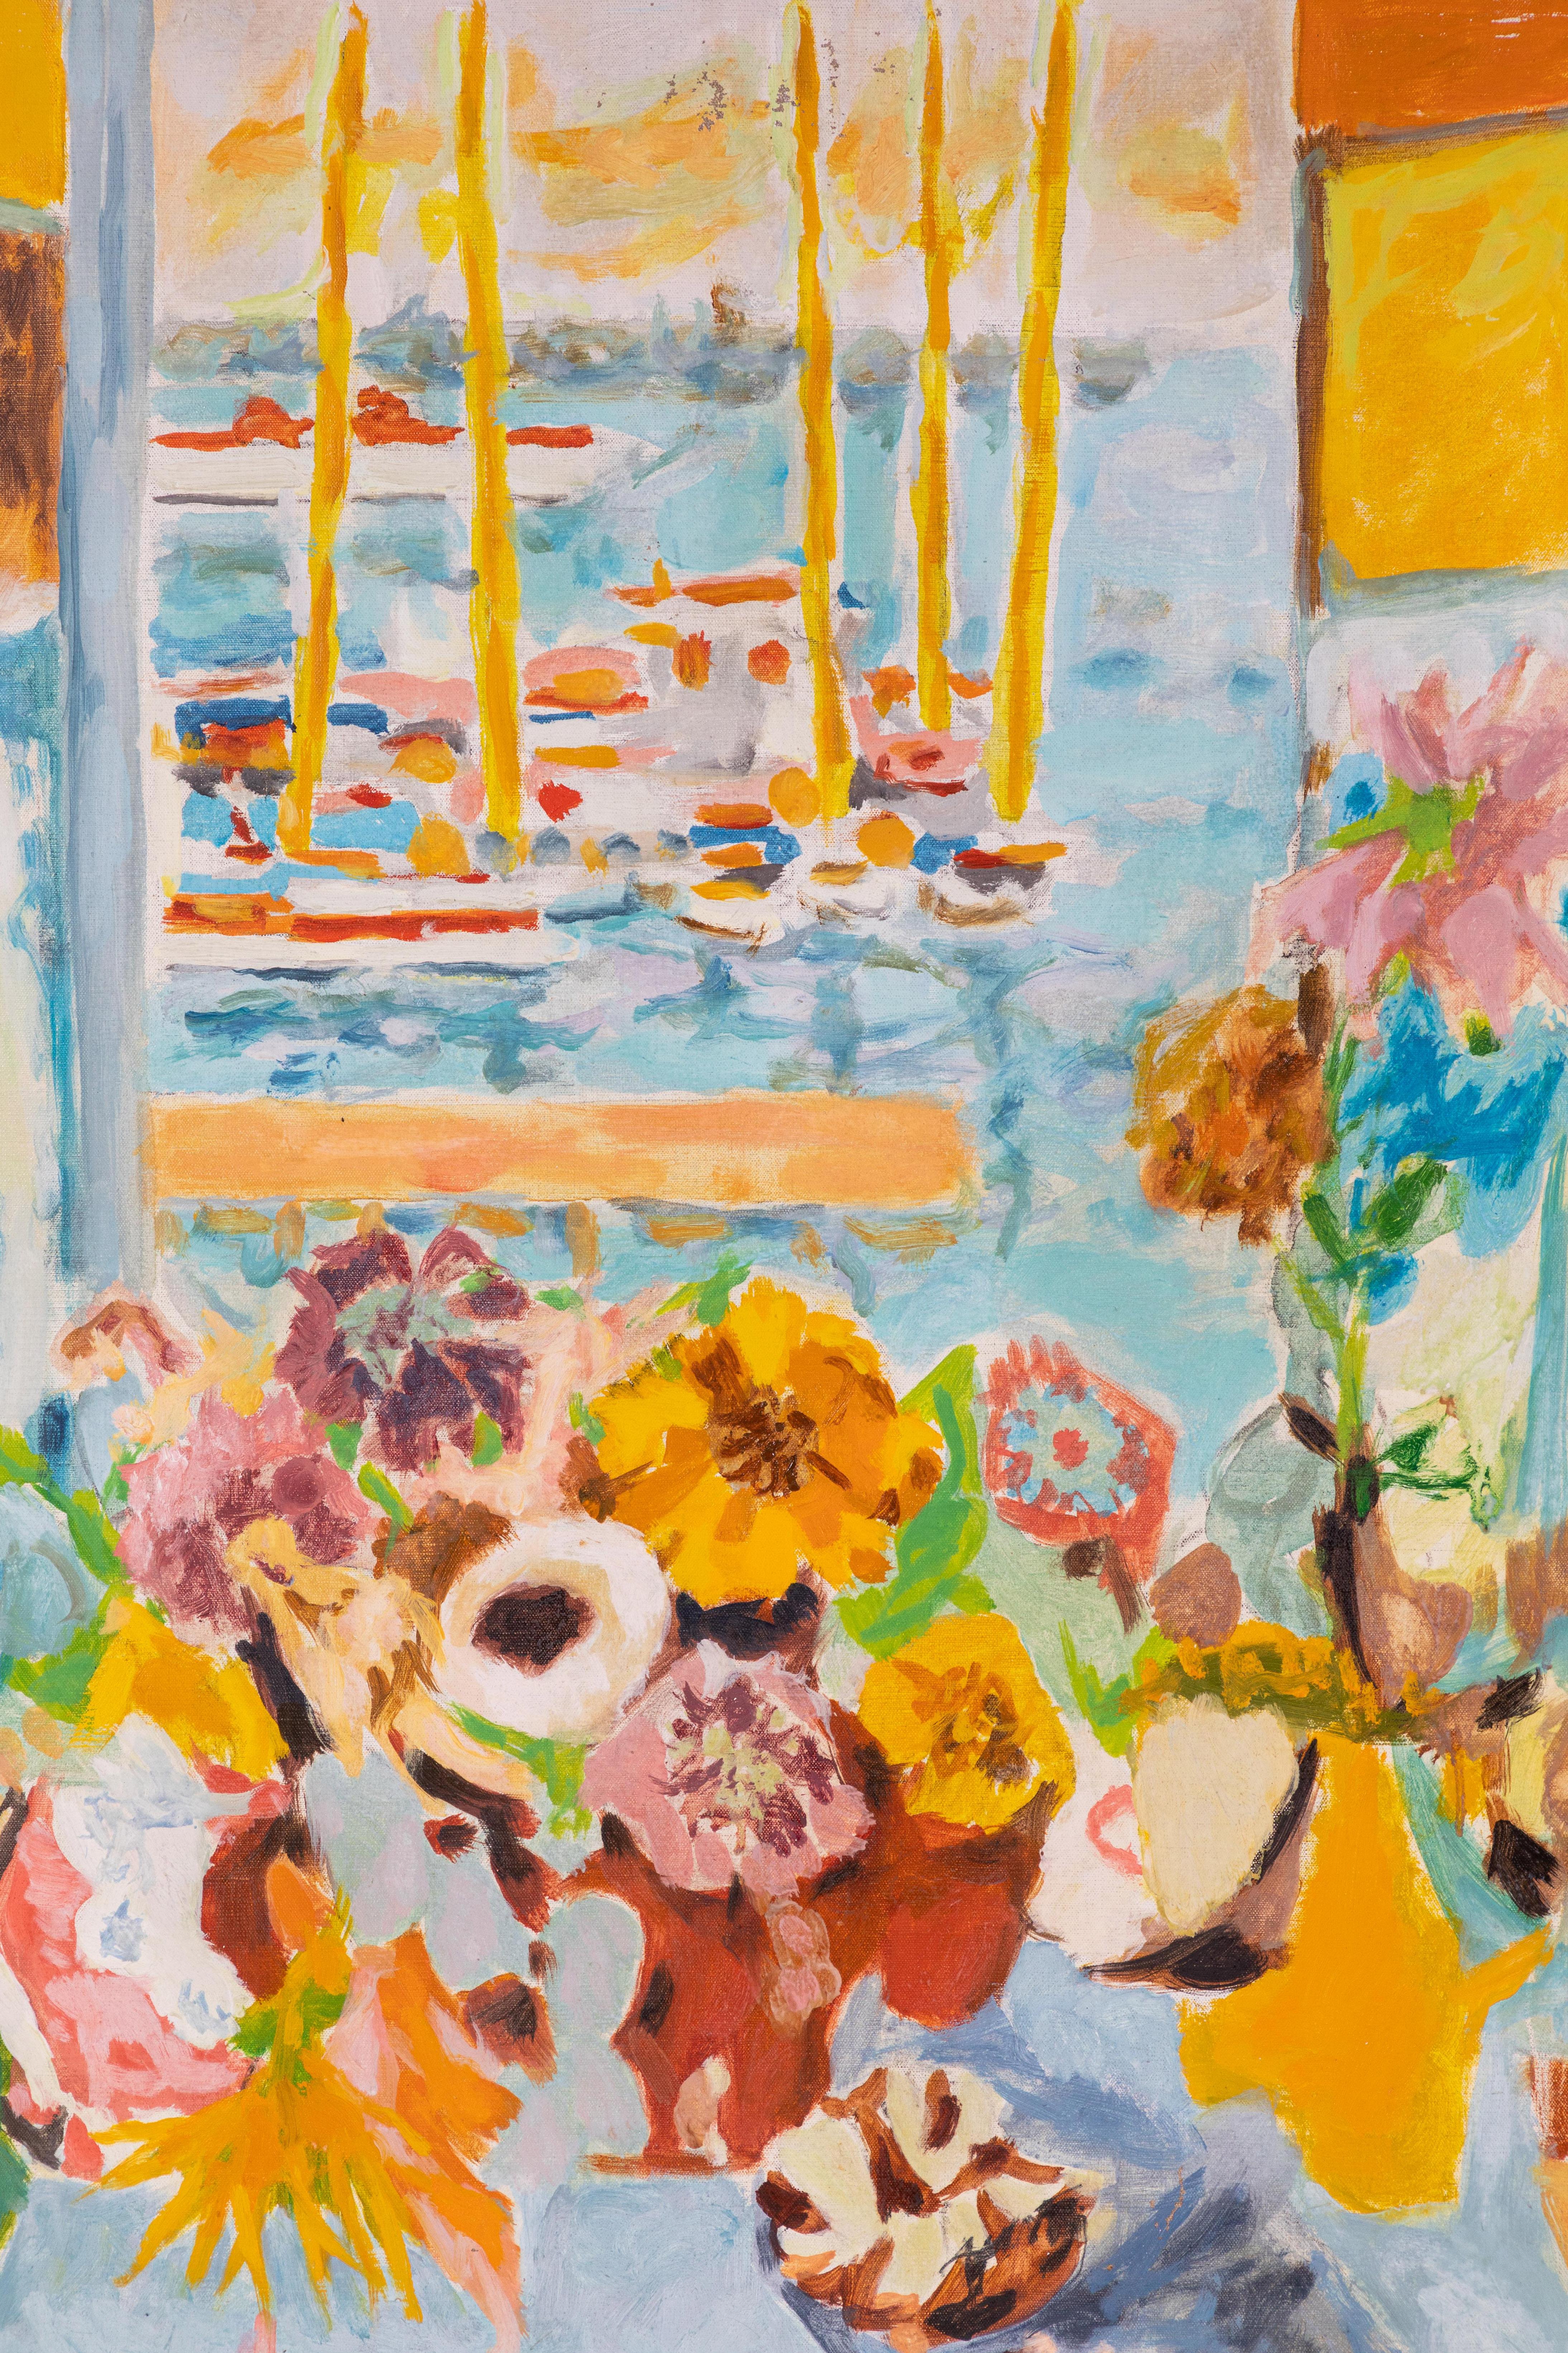 Peinture à l'huile sur toile signée, brillante et très désirable, représentant des fleurs devant une fenêtre ouverte, donnant sur des bateaux amarrés. 